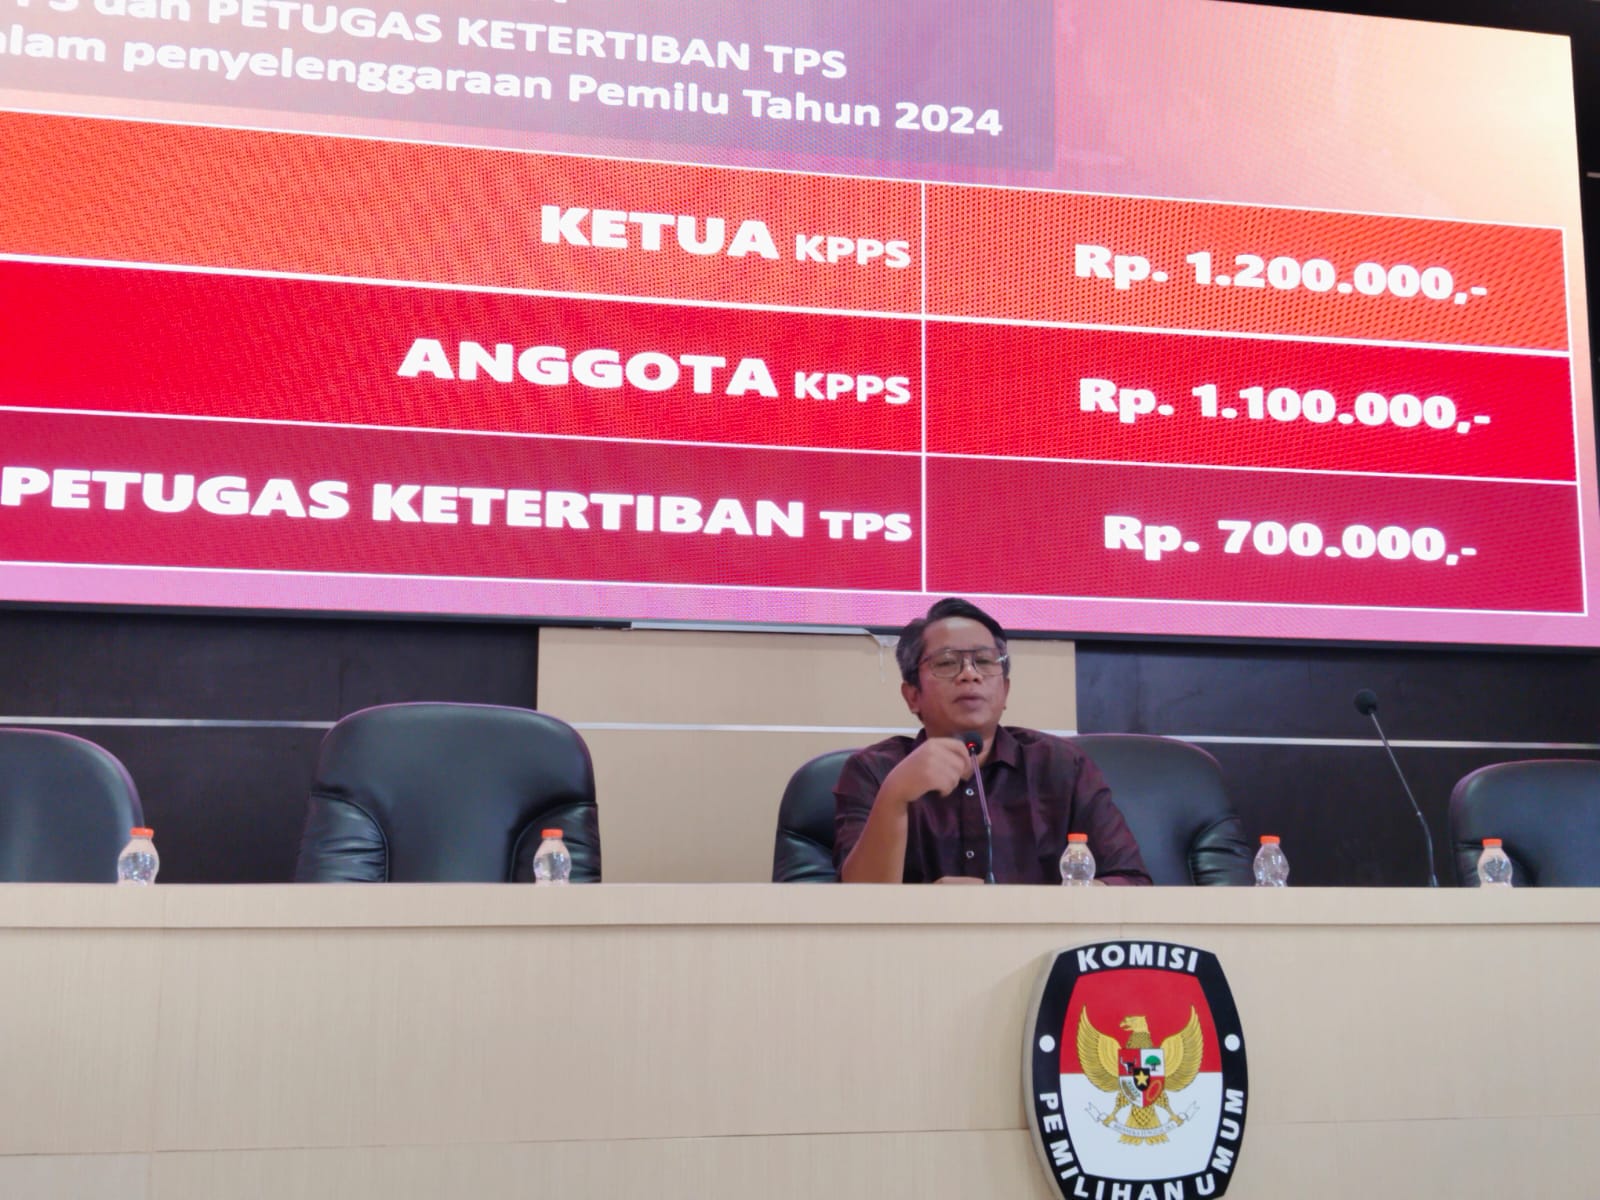 Distribusi Logistik Pemilu, KPU Kerjasama dengan PT. Pos Indonesia